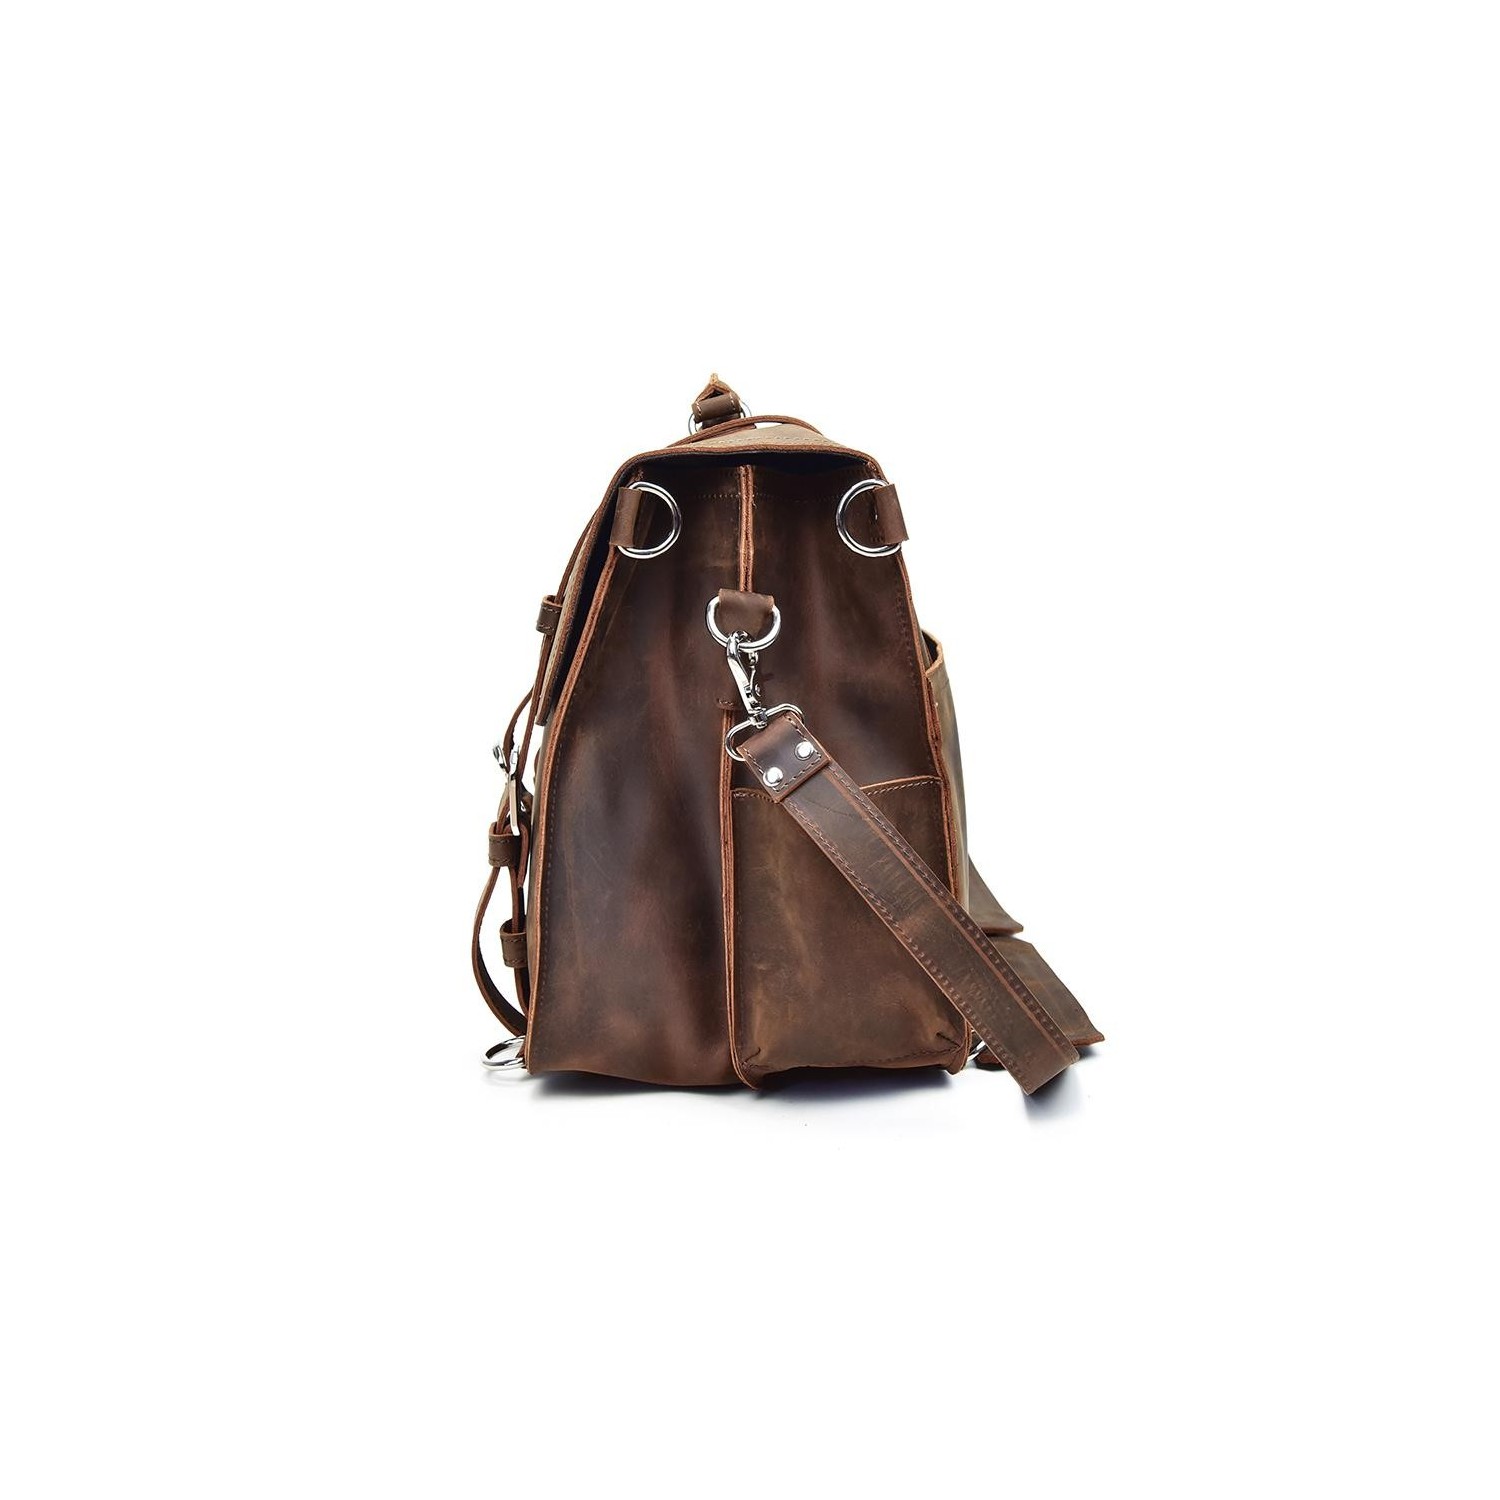 The Gustav Messenger Bag  Large Capacity Vintage Leather Messenger Ba